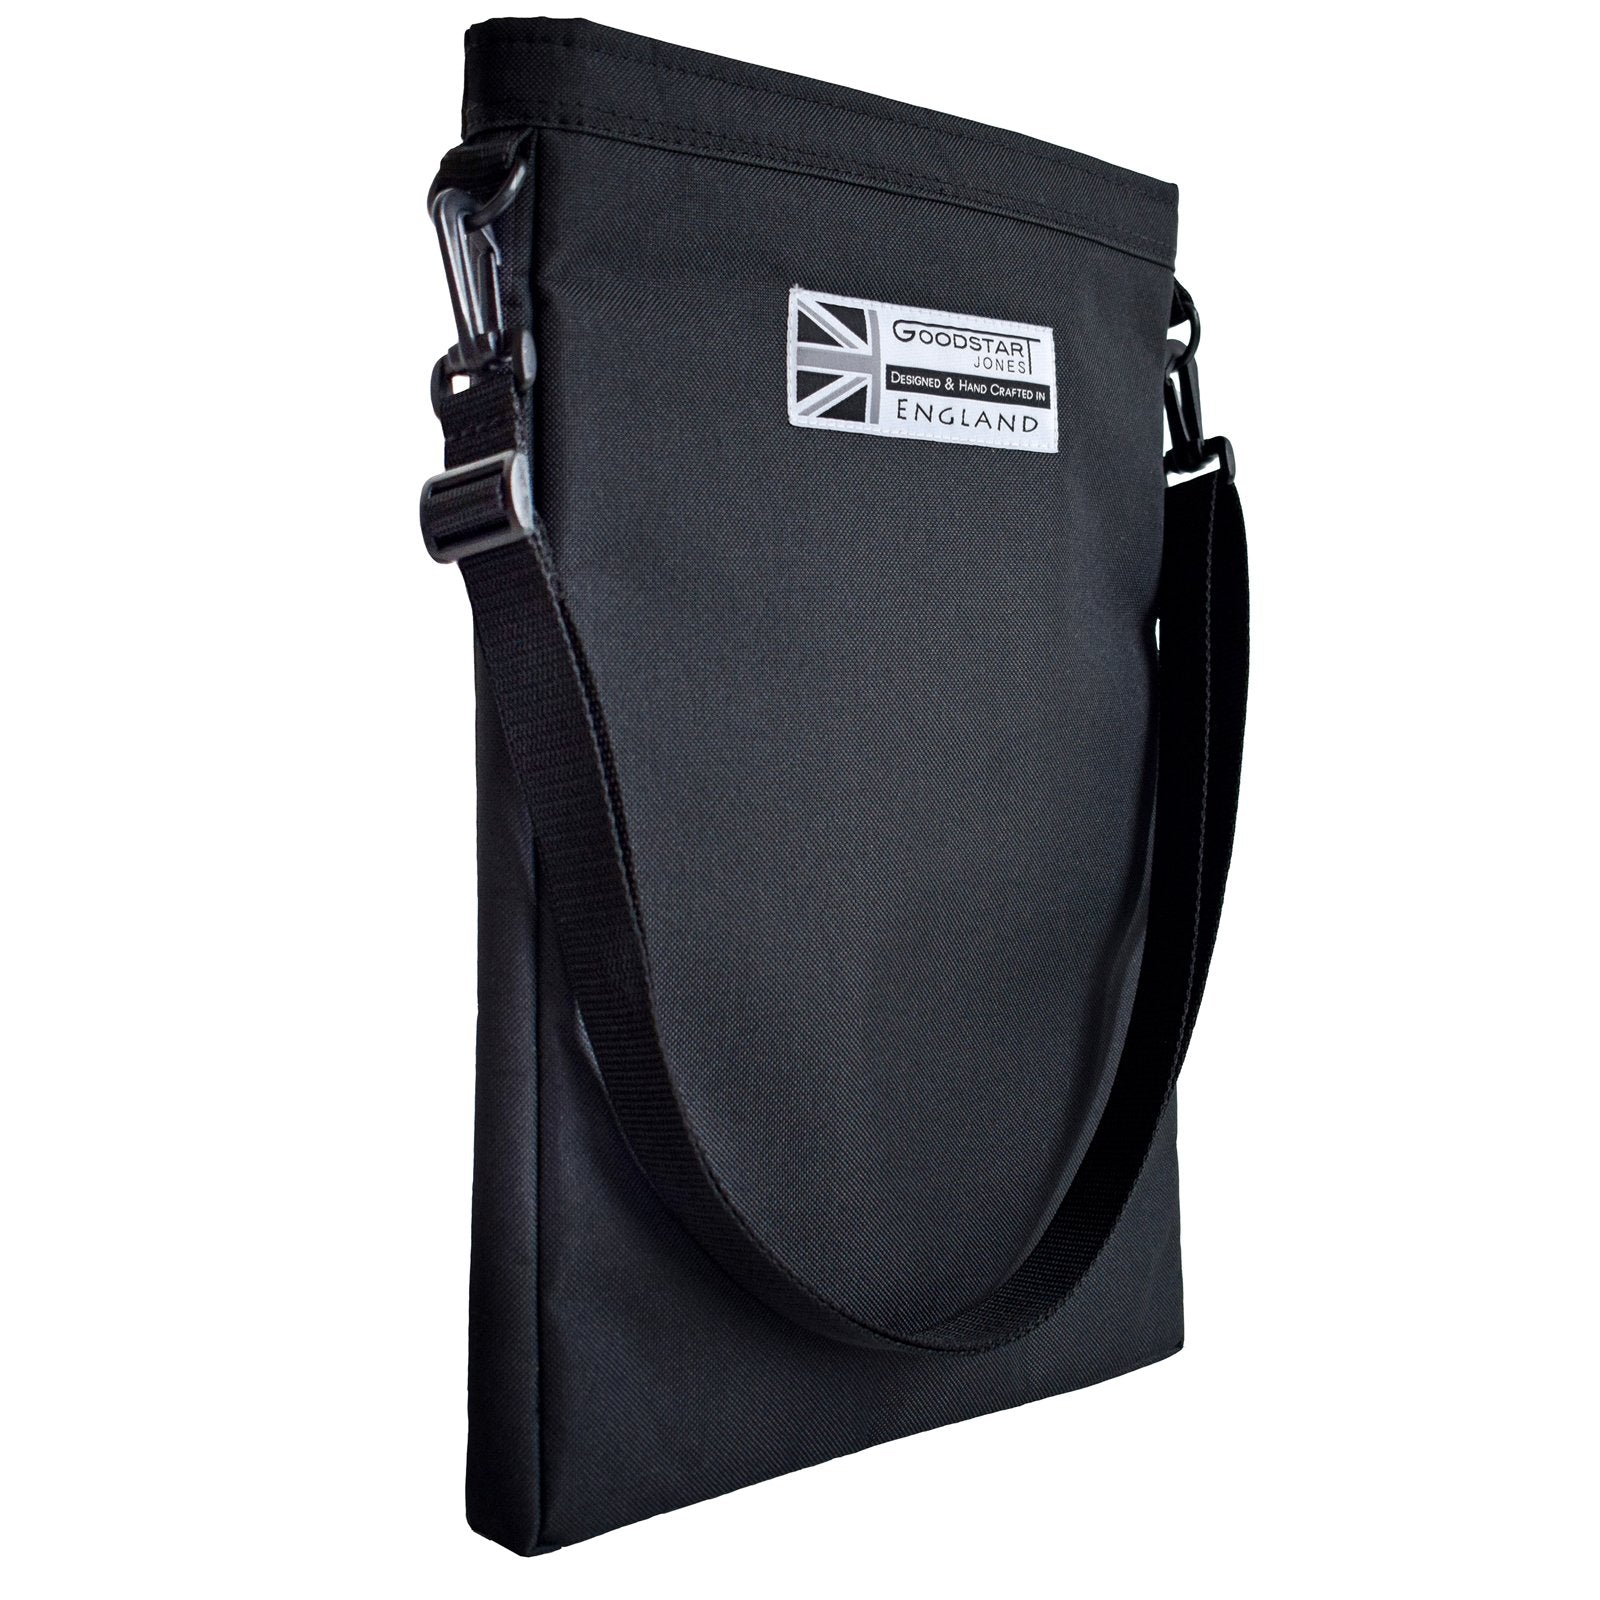 Black padded laptop sleeve made by Goodstart Jones 